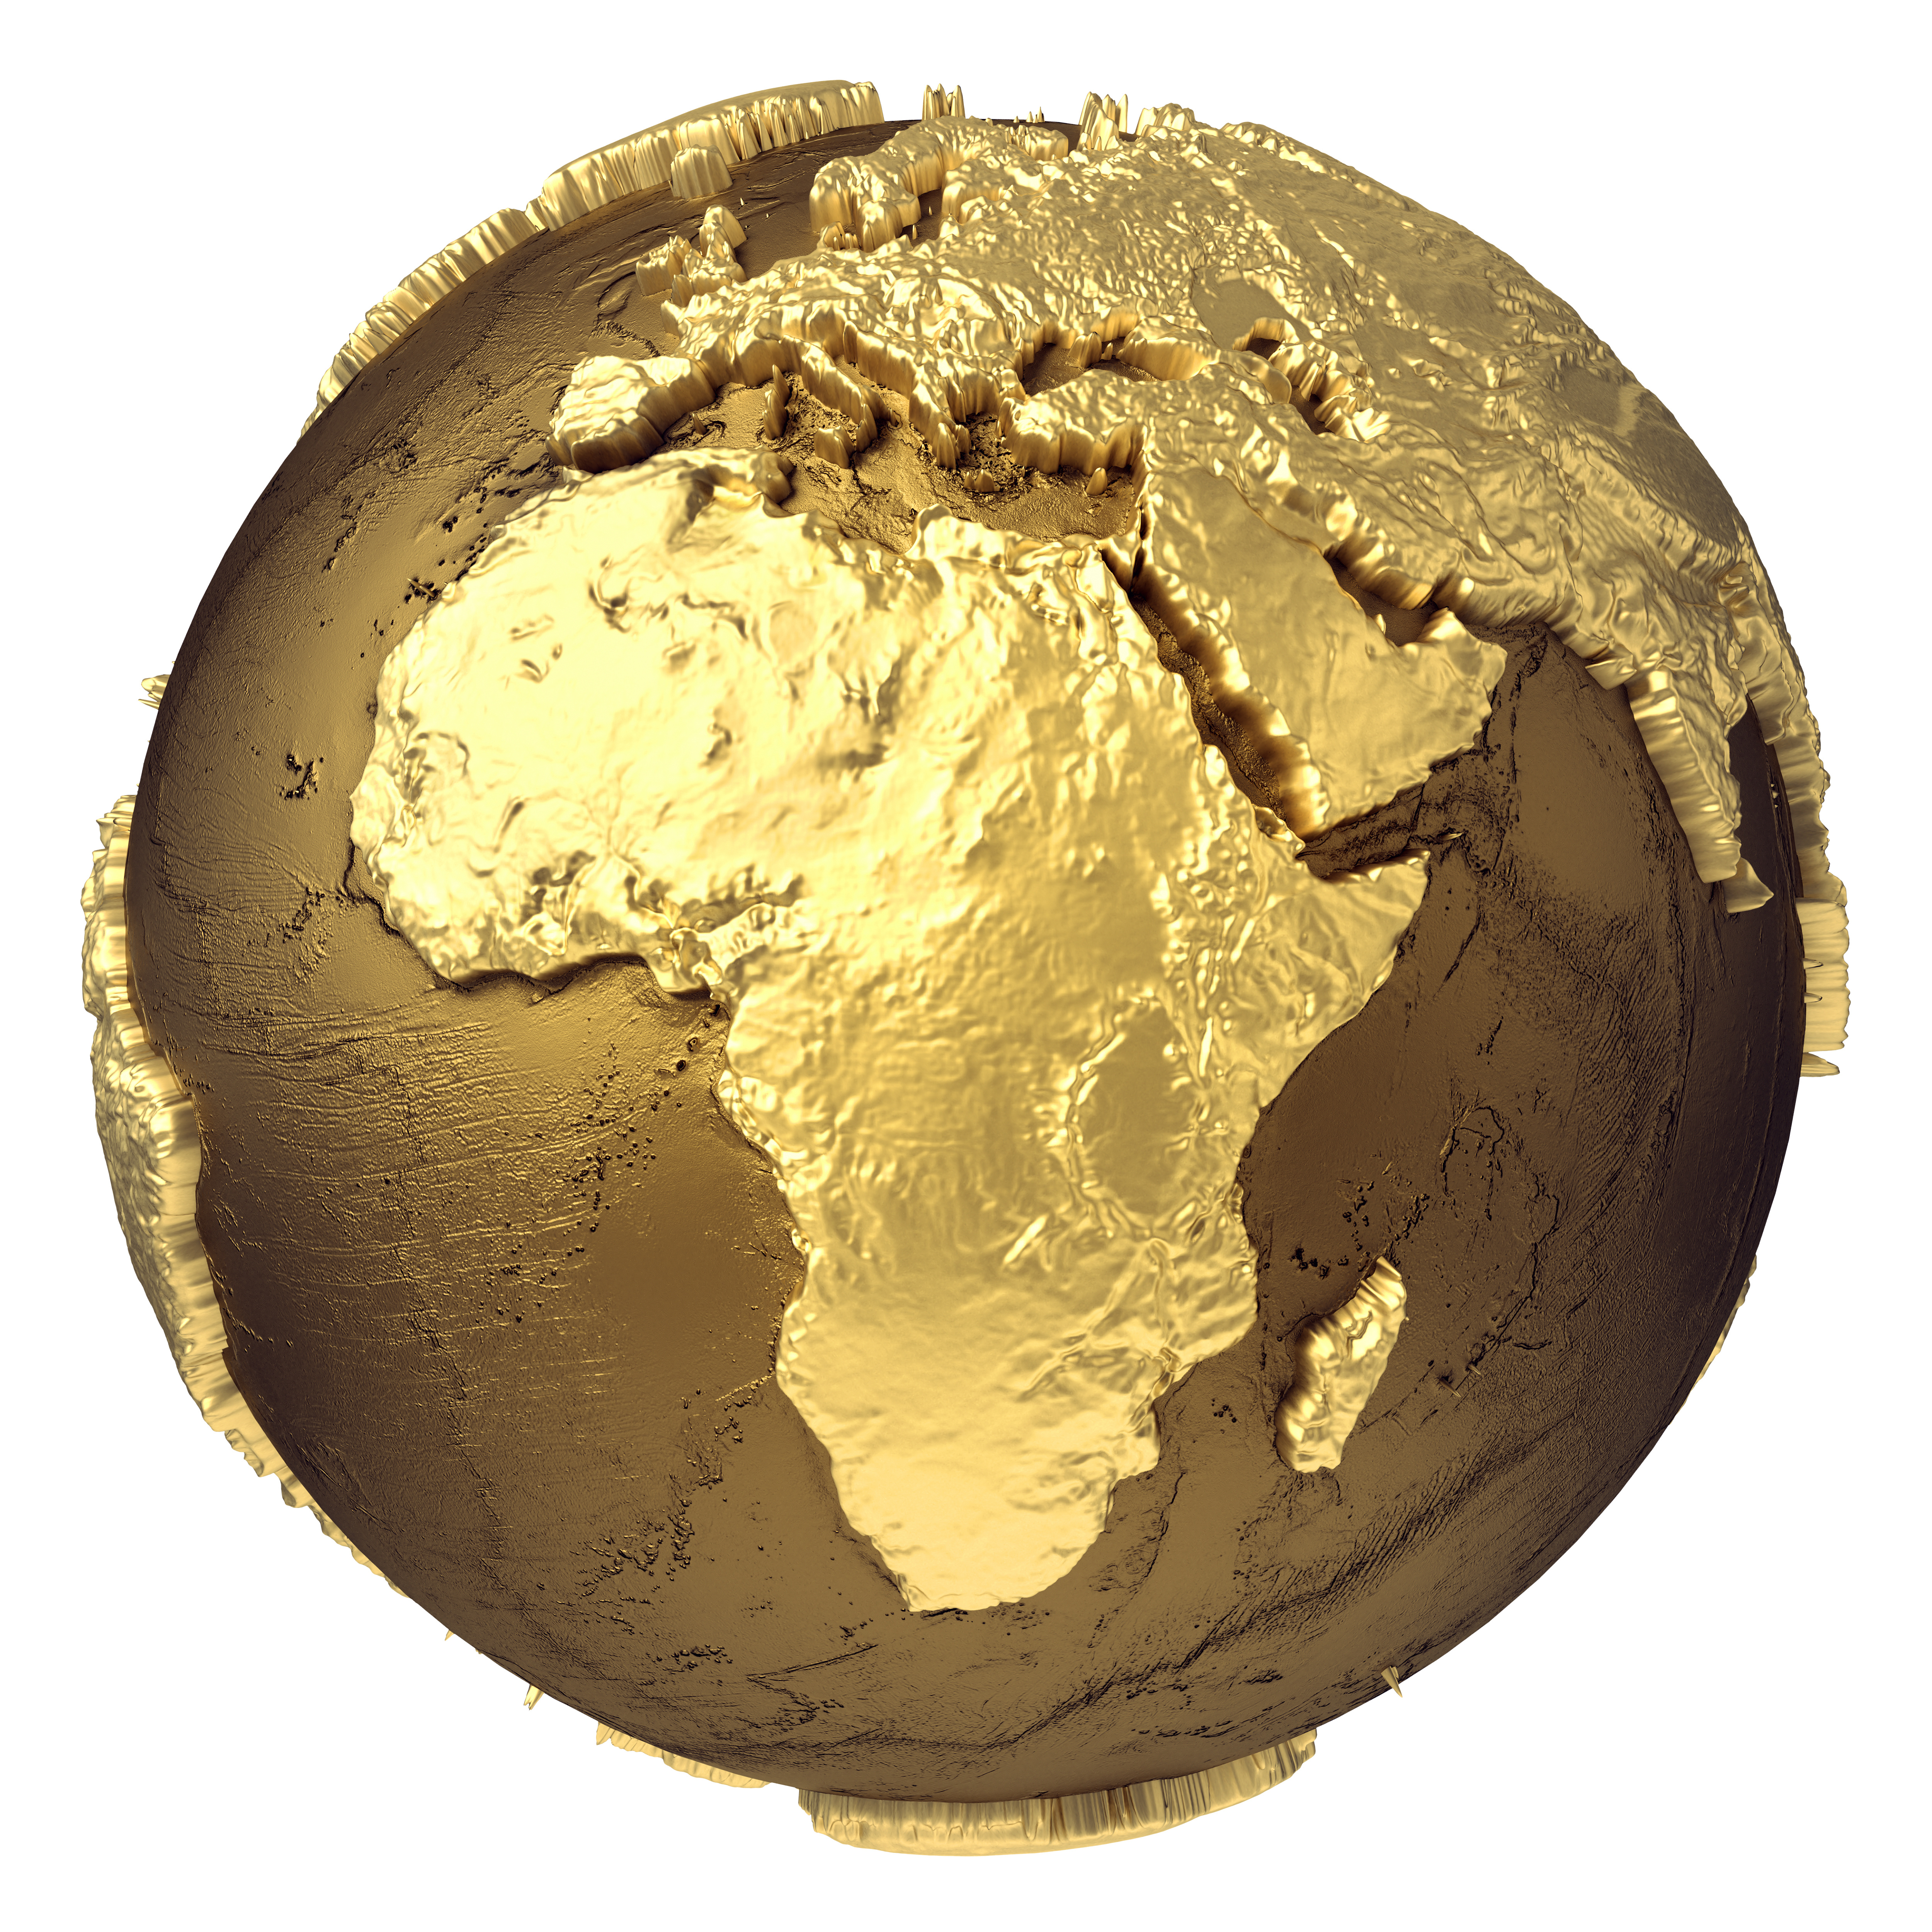 Próximo webinar da série África como destino de internacionalização será realizado no dia 12/8